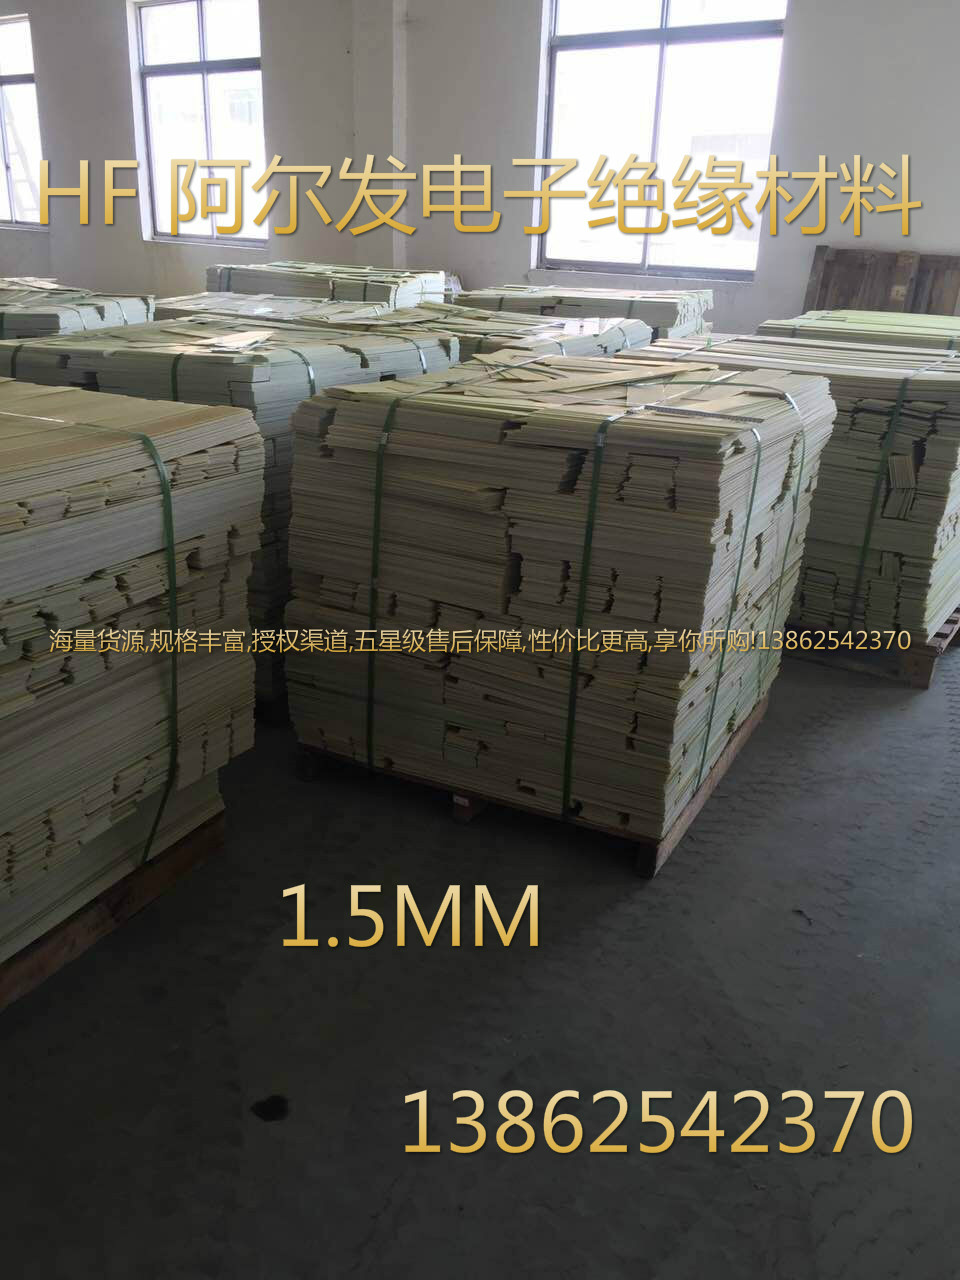 广东地区环氧绝缘板供应商 海量货源,13862542370